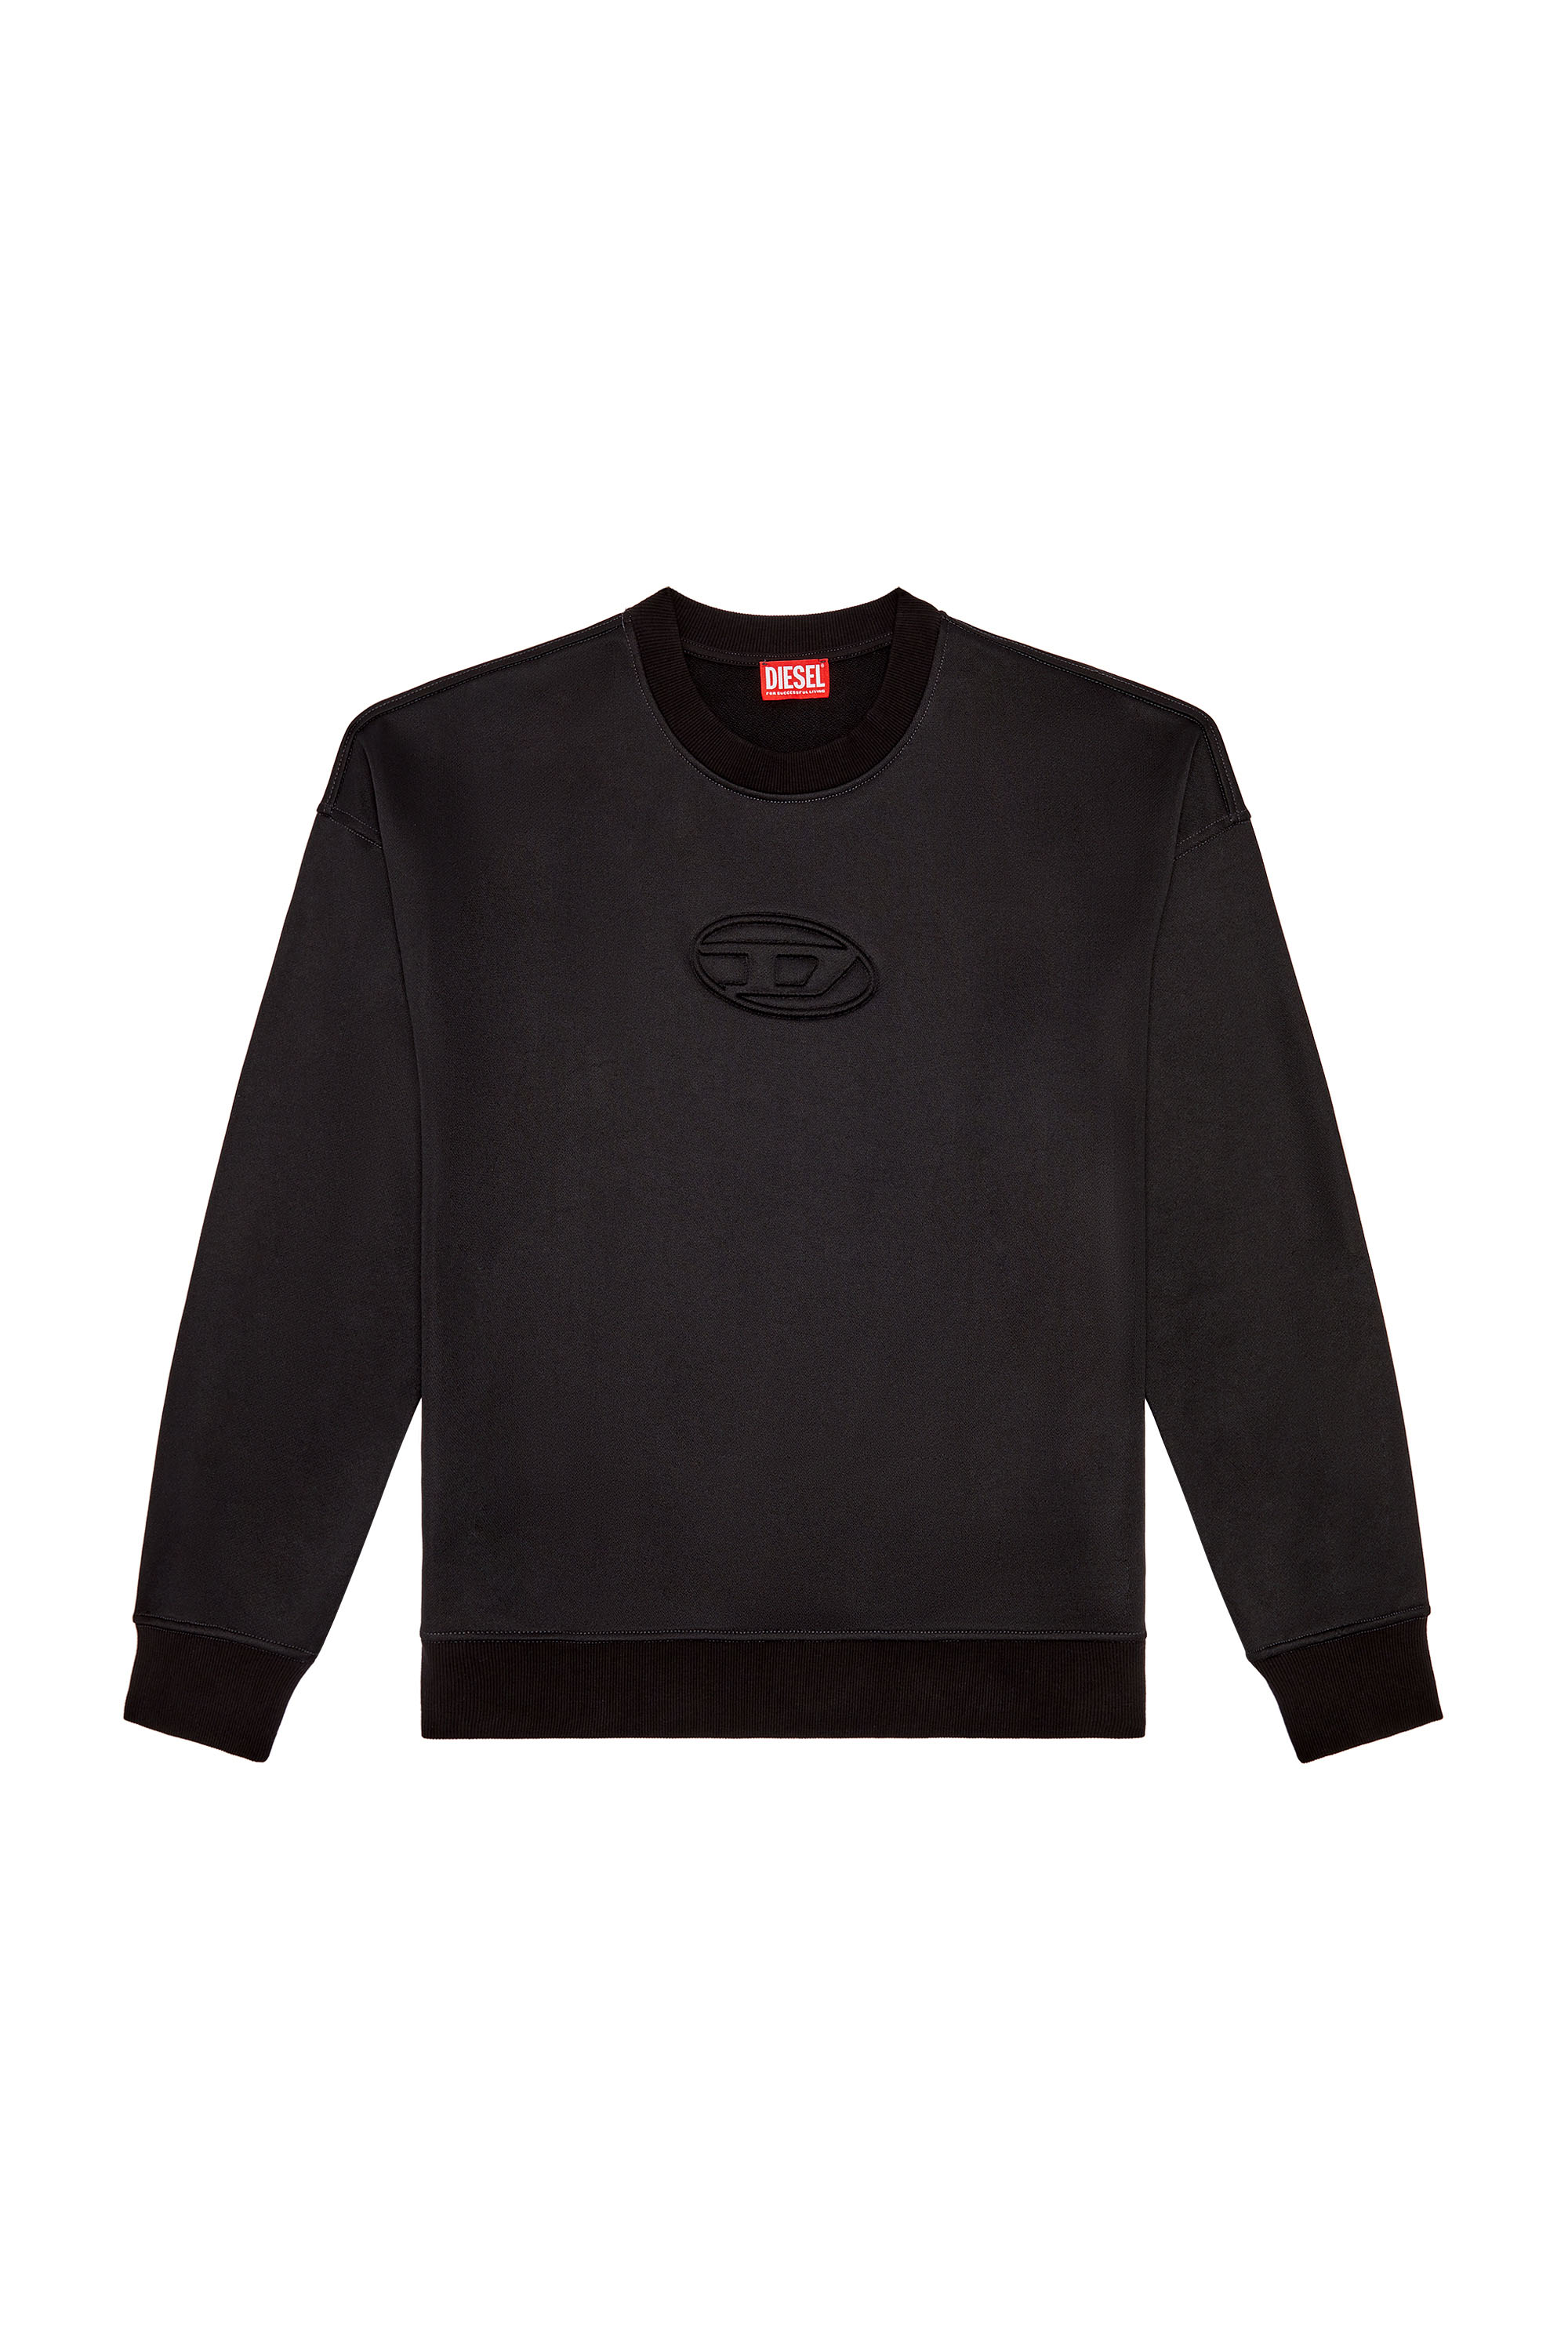 Diesel - S-ROBY-N1, Man Sweatshirt with embossed Oval D logo in Black - Image 3